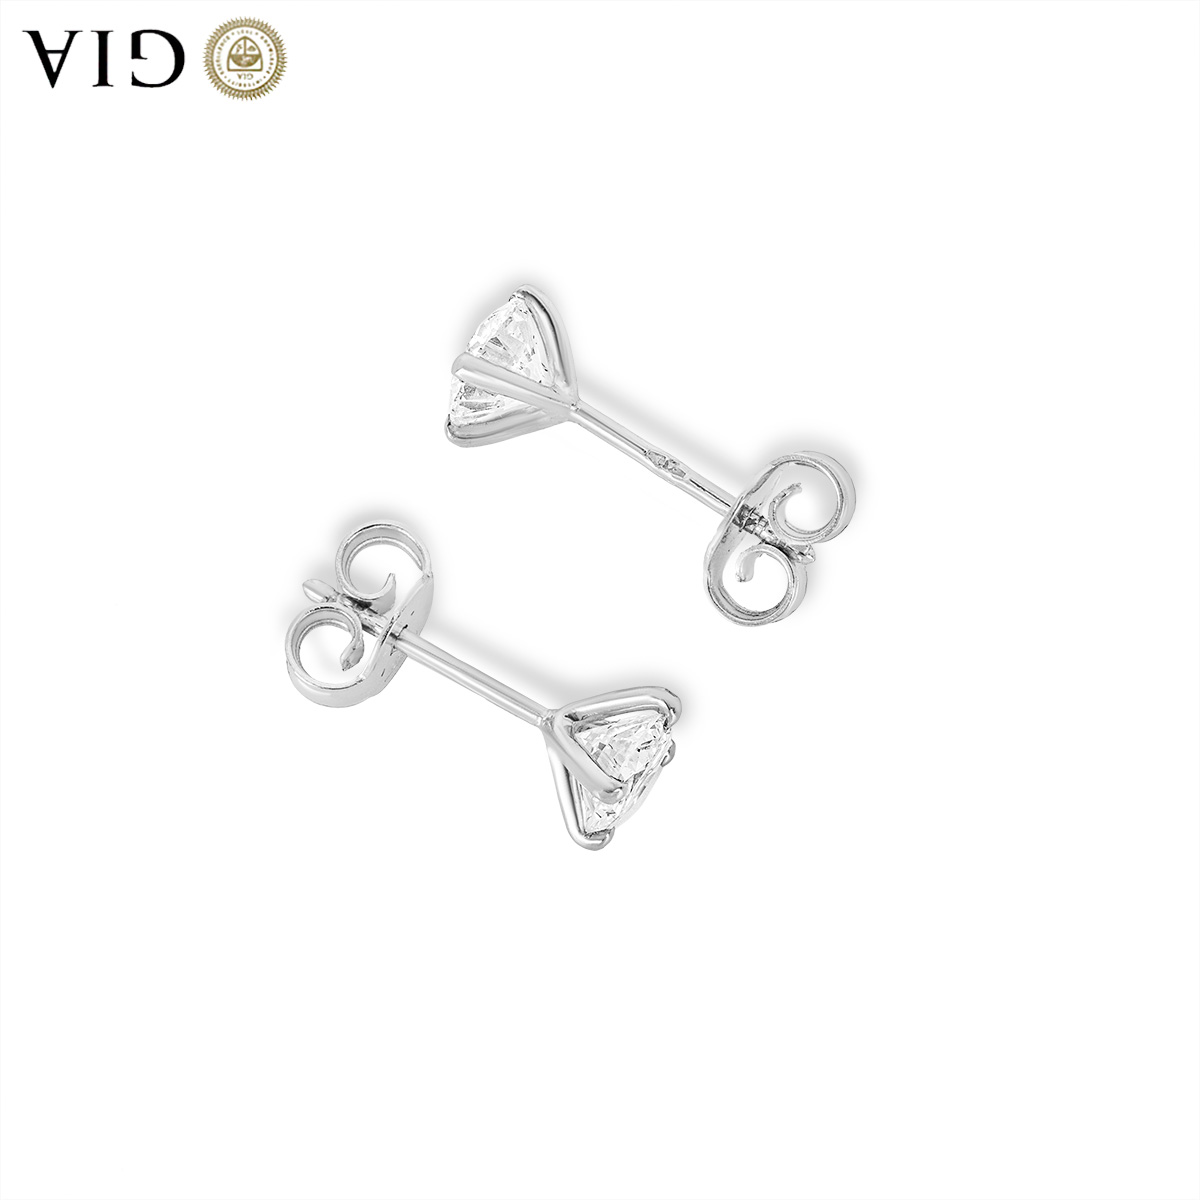 White Gold Diamond Earrings 1.04ct TDW